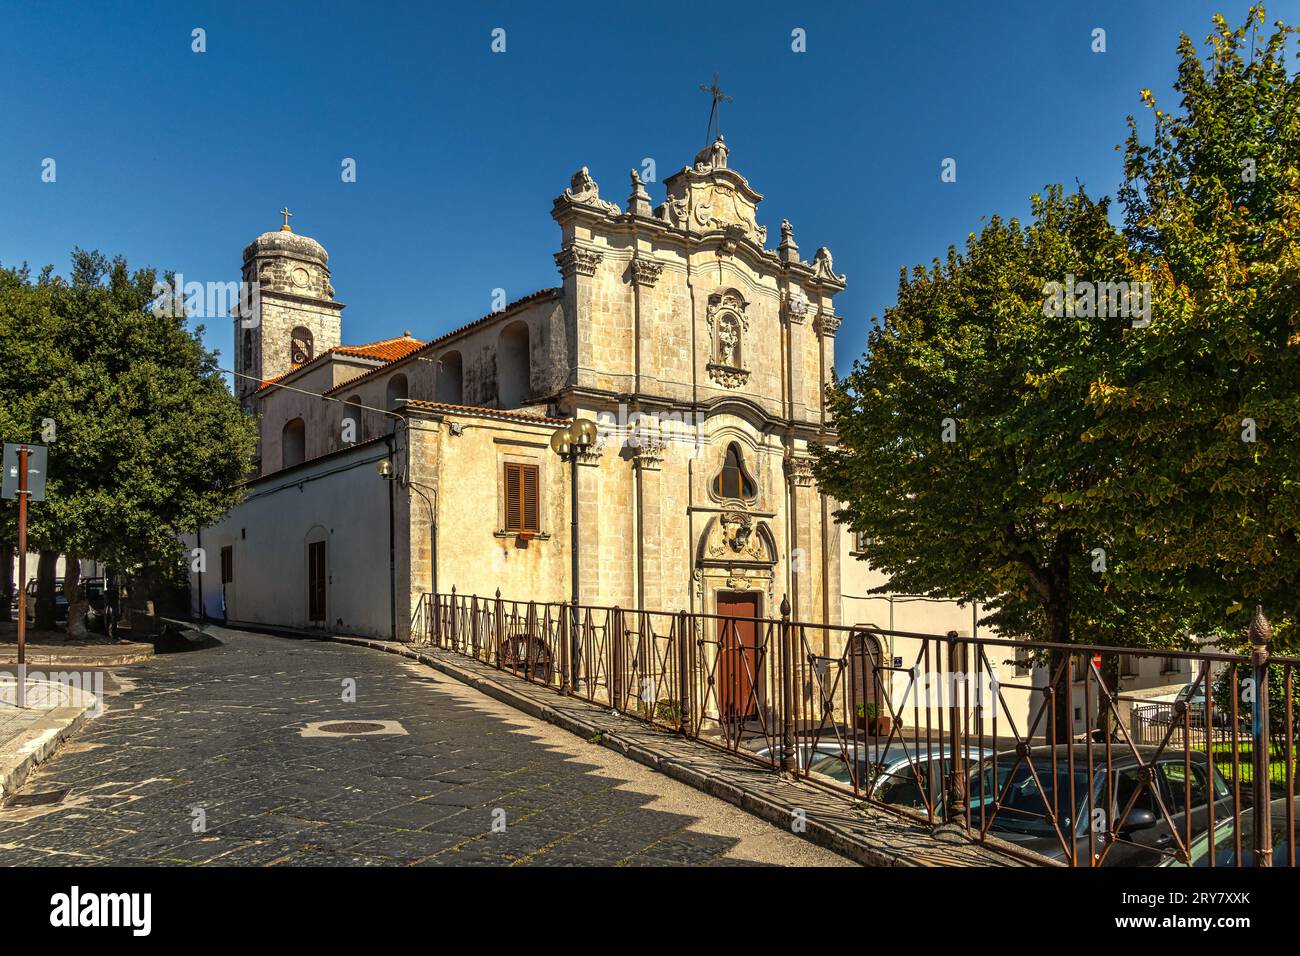 La fachada de la iglesia del siglo XVIII dedicada a Santa María del Carmine en Monte Sant'Angelo. Monte Sant'Angelo, provincia de Foggia, Italia Foto de stock